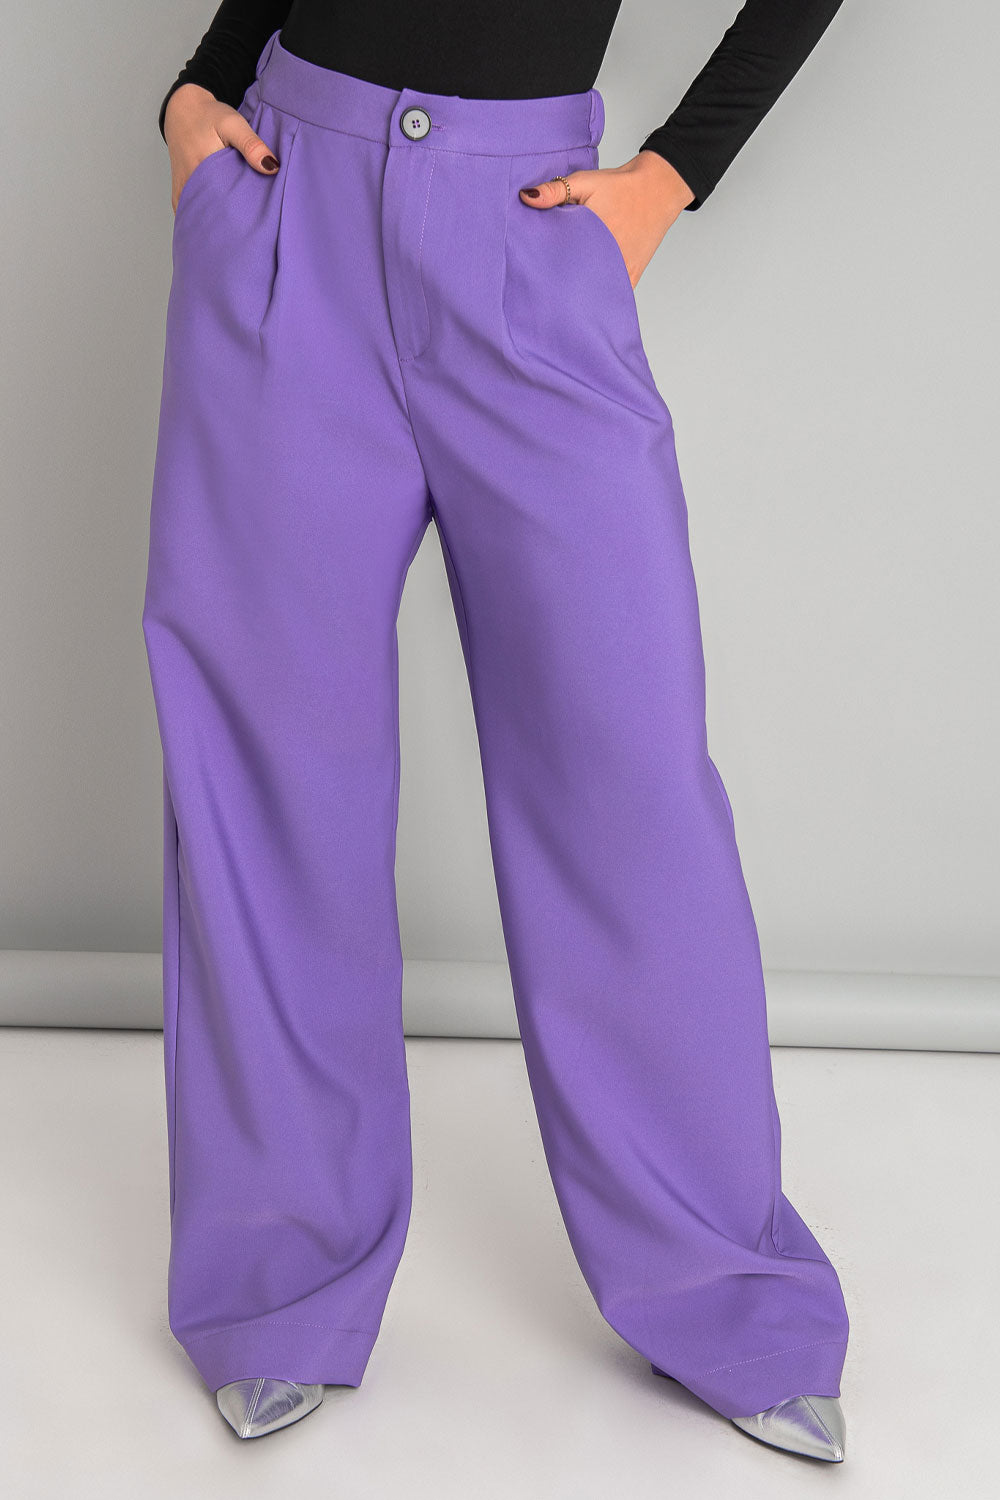 Pantalón de fit wide leg, pinzas frontales, bolsillos delanteros, cintura alta con pretina elástica posterior, cierre frontal con cremallera oculta y botón en contraste.